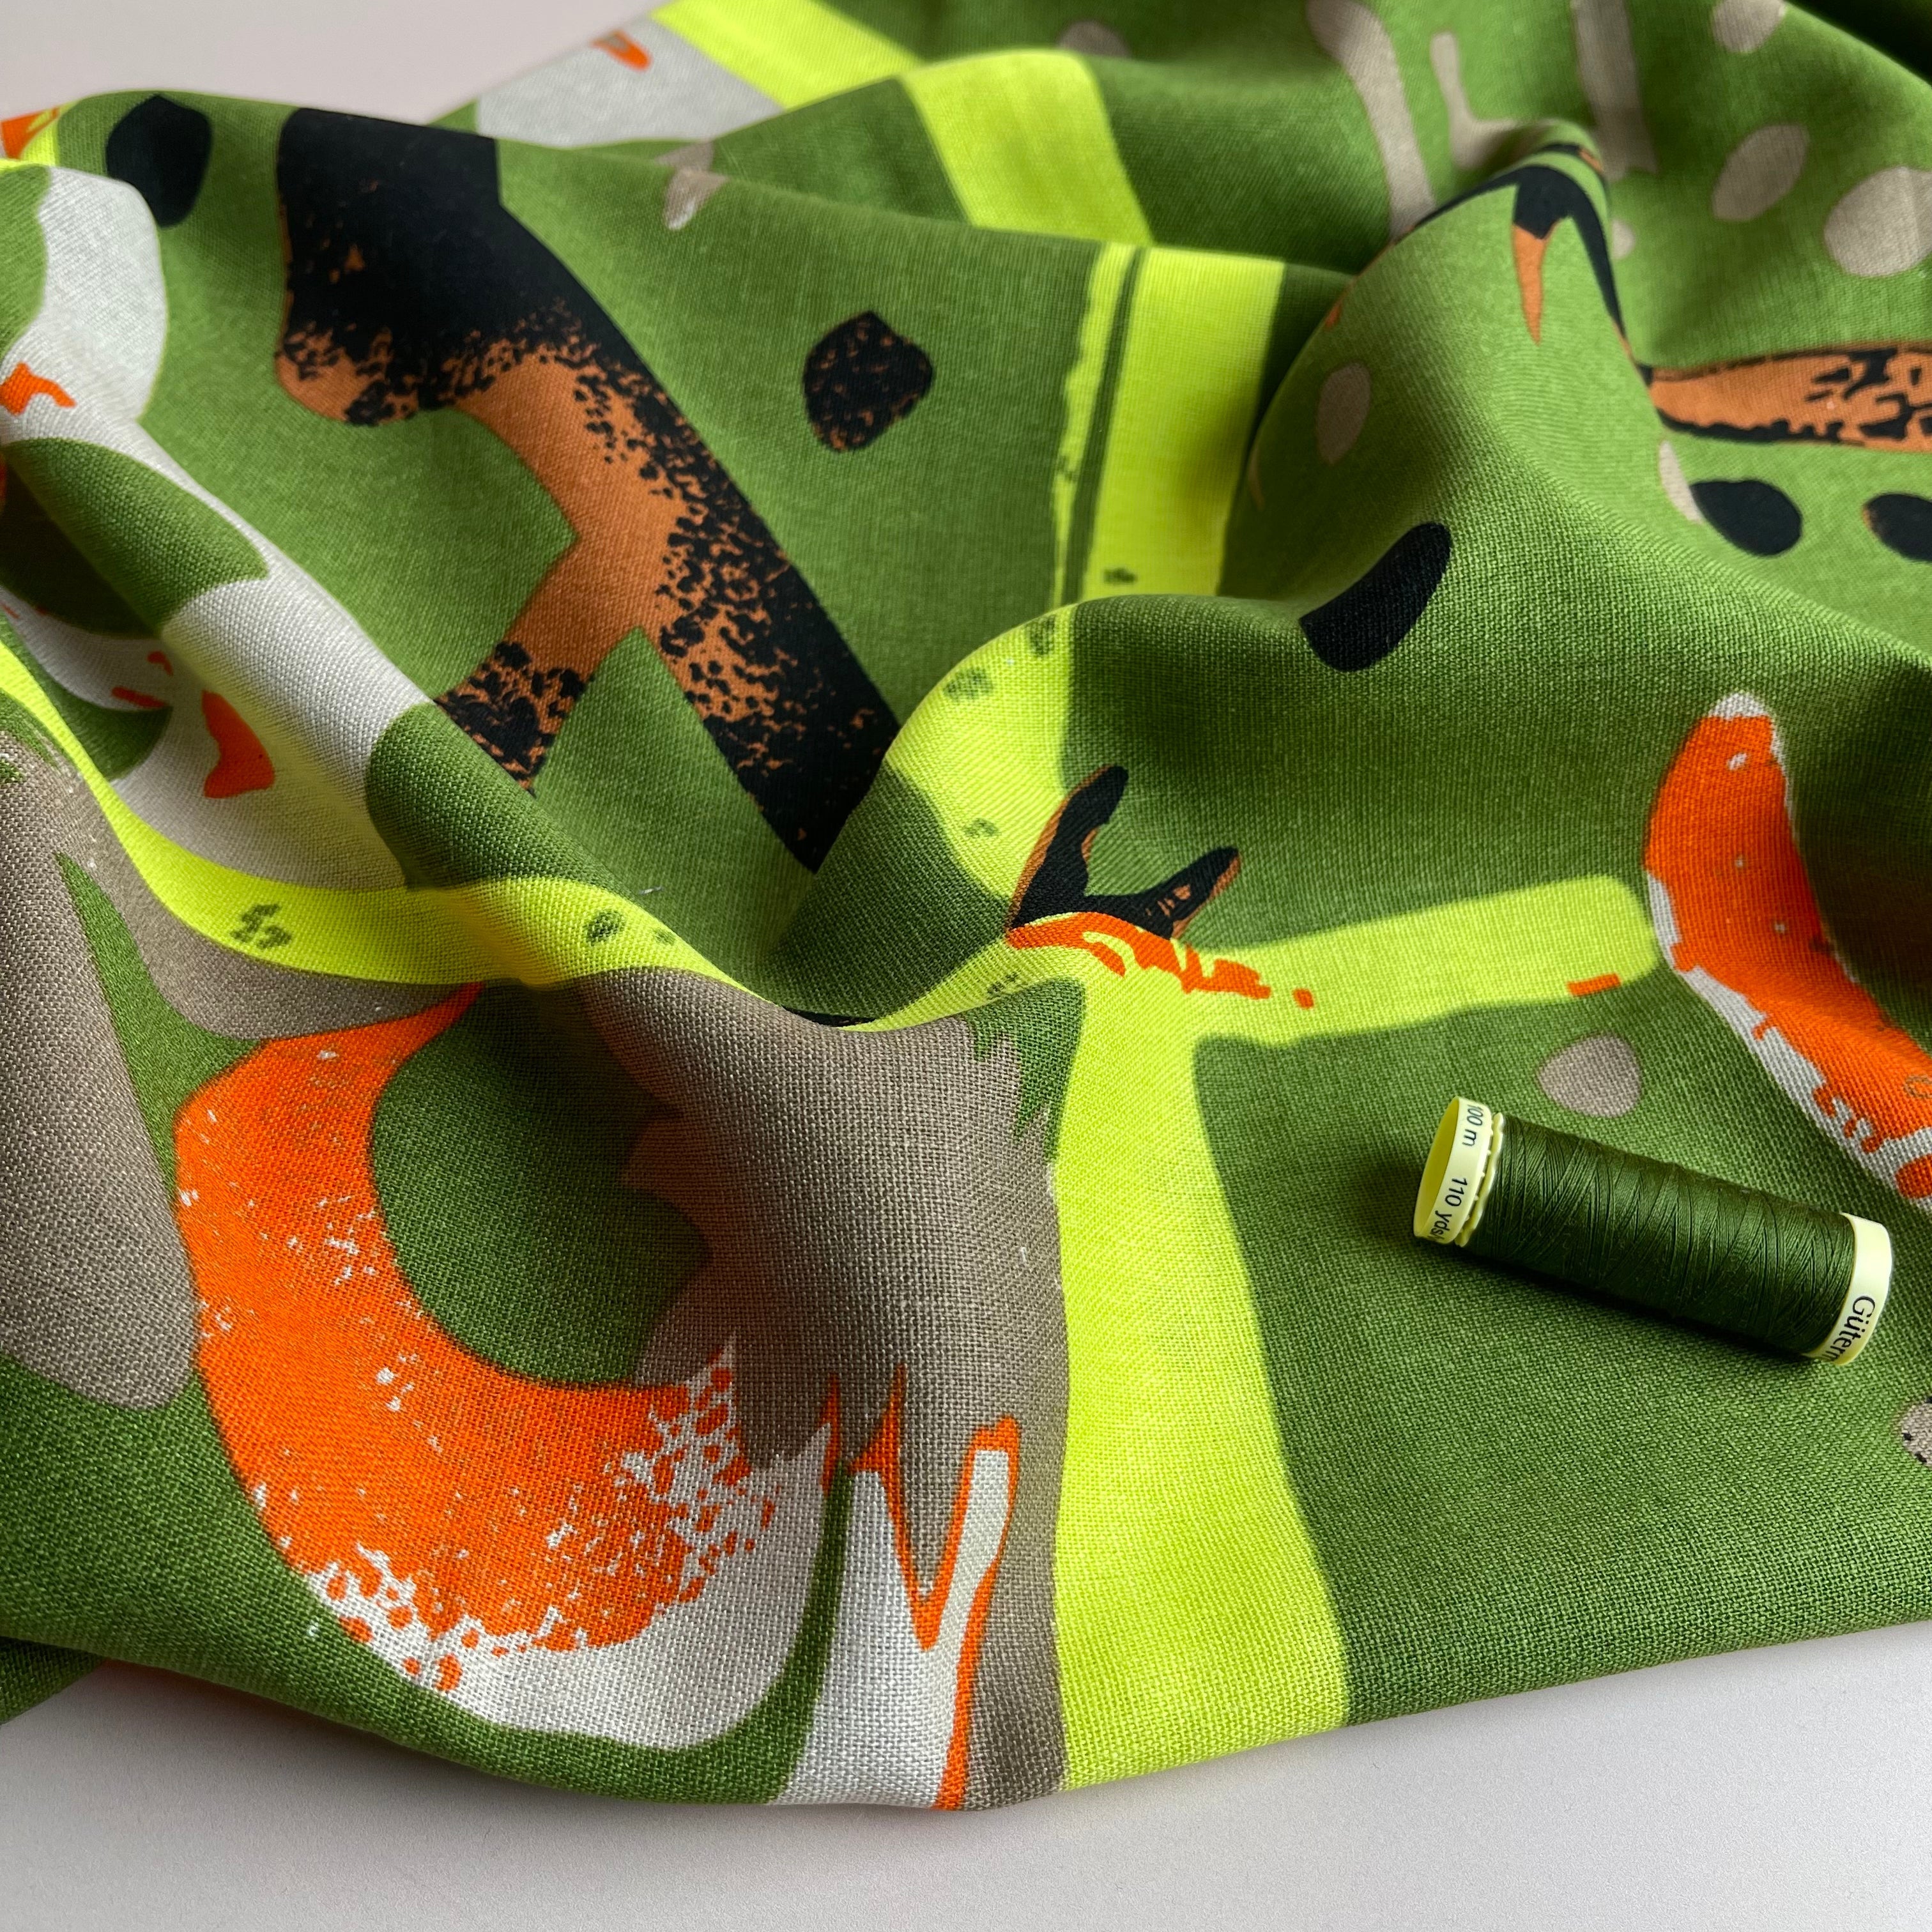 REMNANT 0.66 Metre - Modern Art Green Viscose Linen Blend Fabric